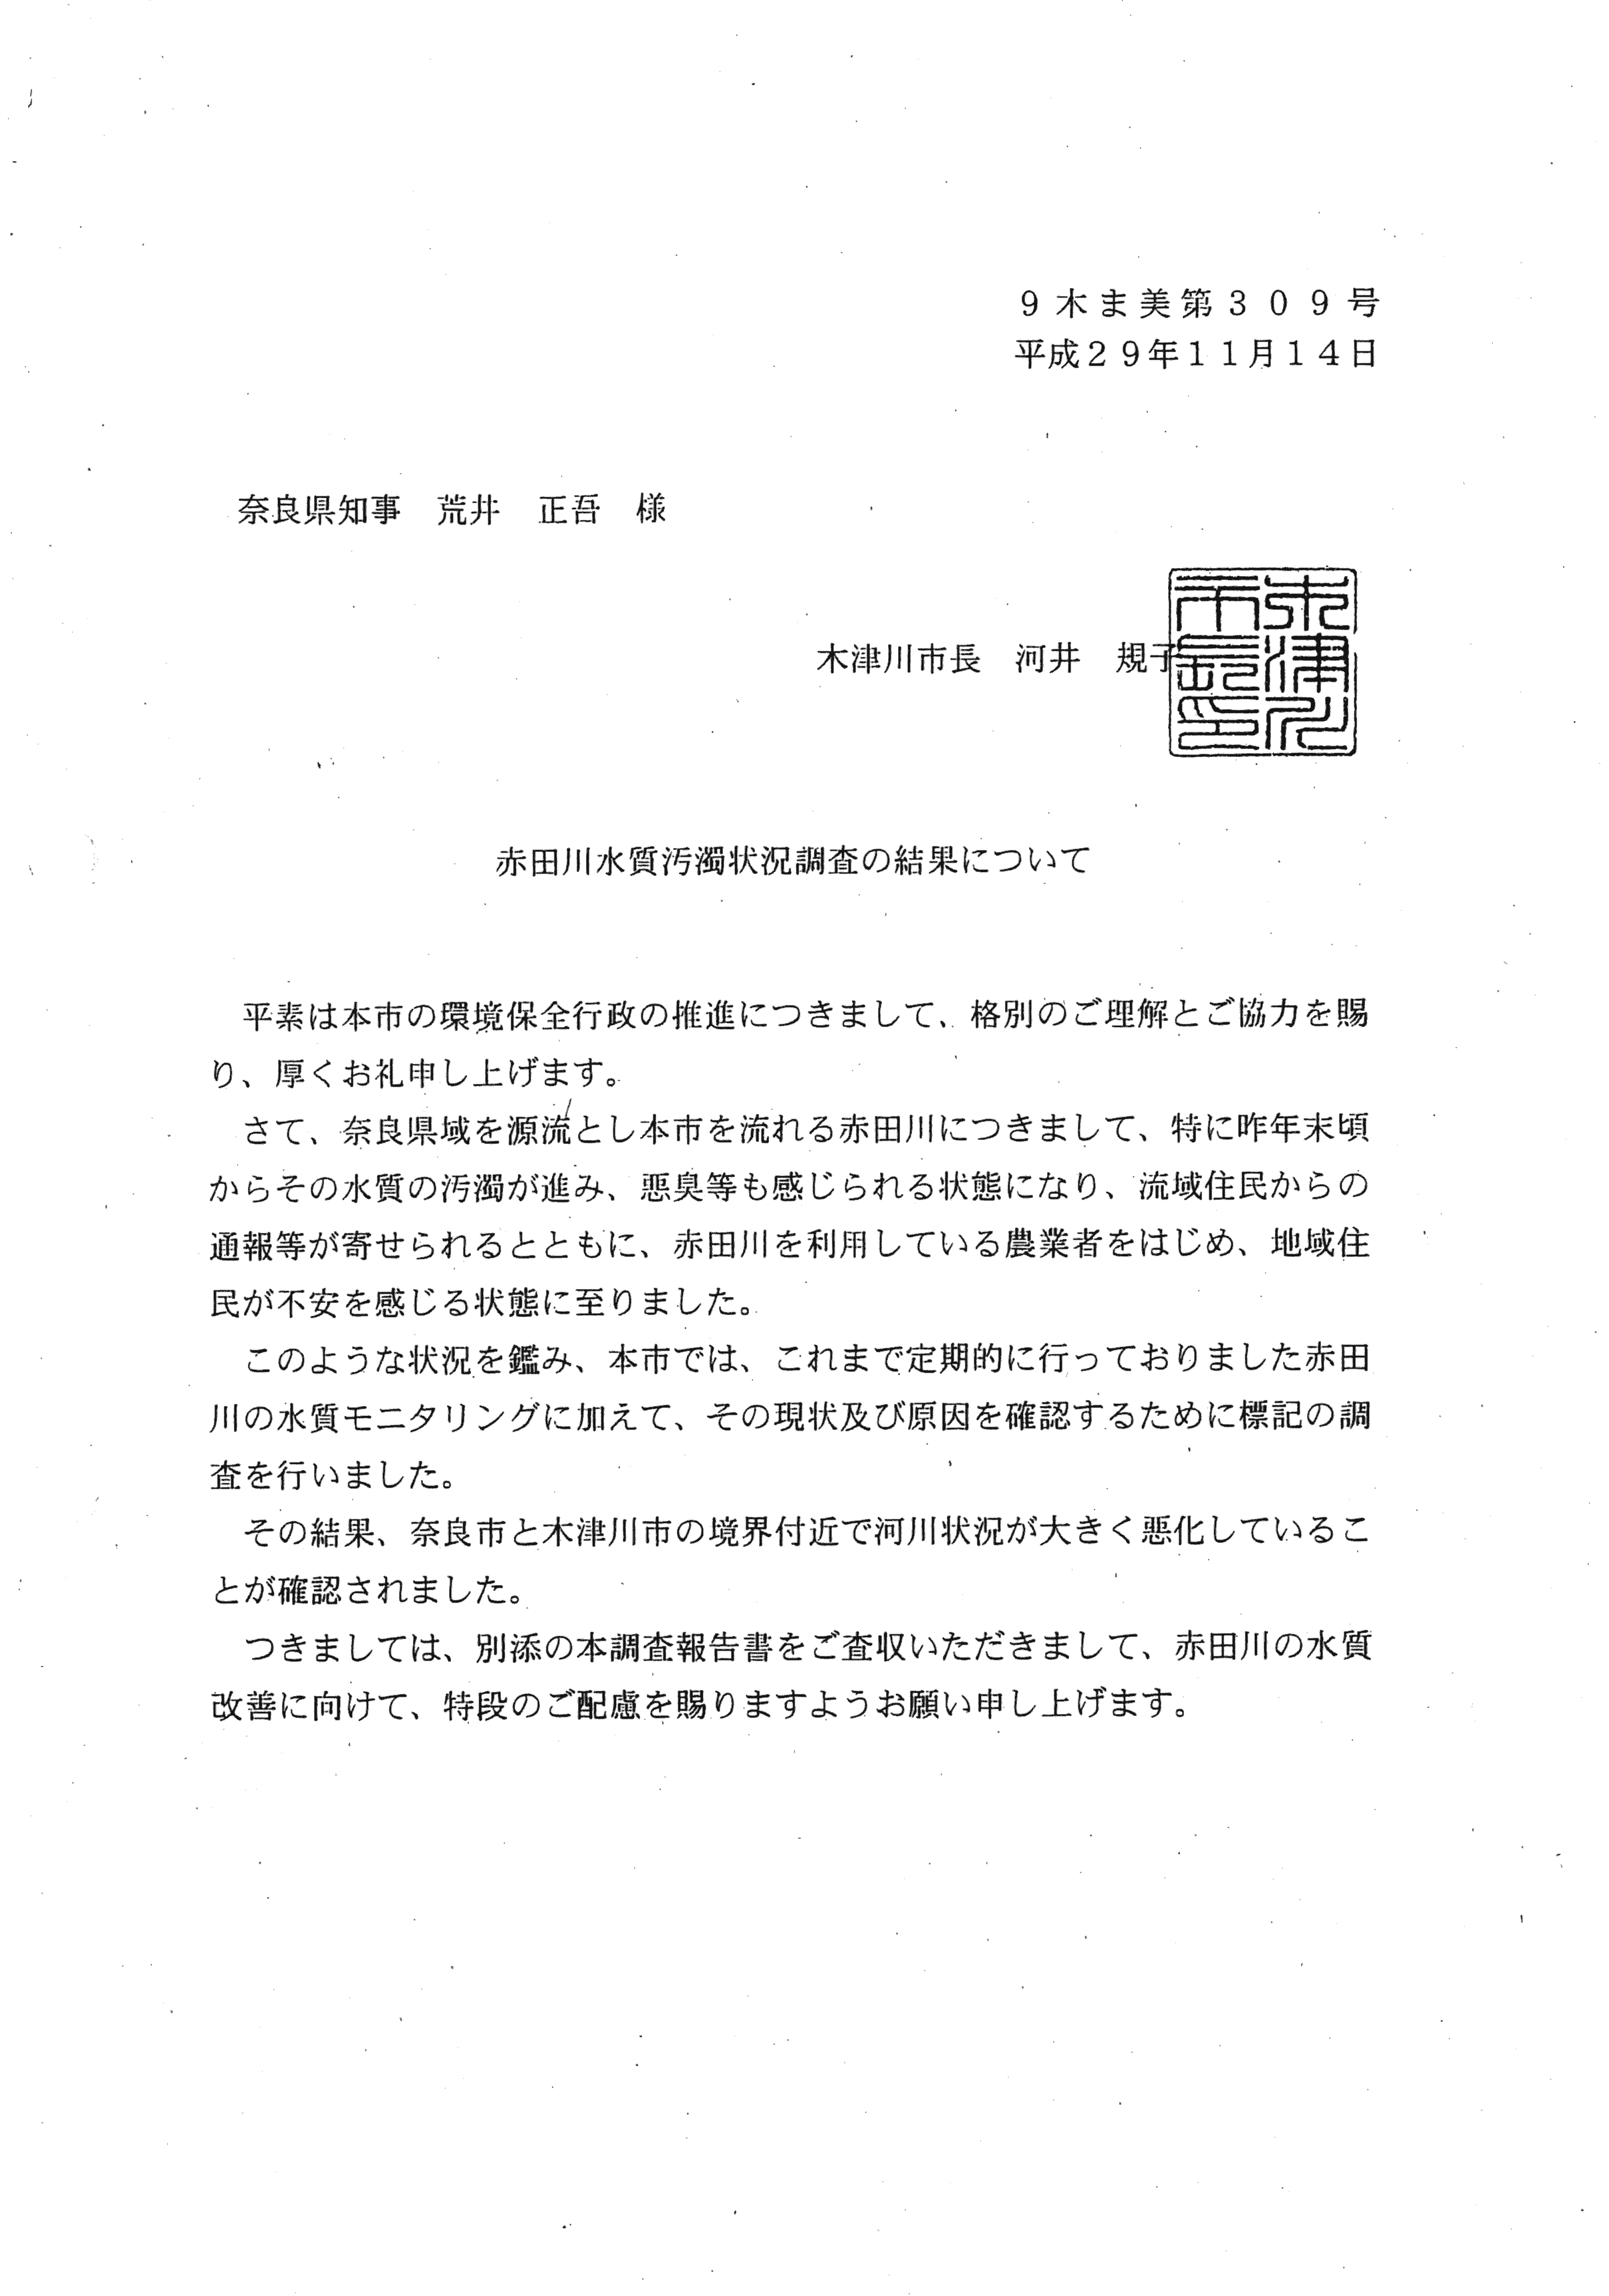 平成29年11月14日-赤田川水質汚濁状況調査の結果について（奈良県知事宛）